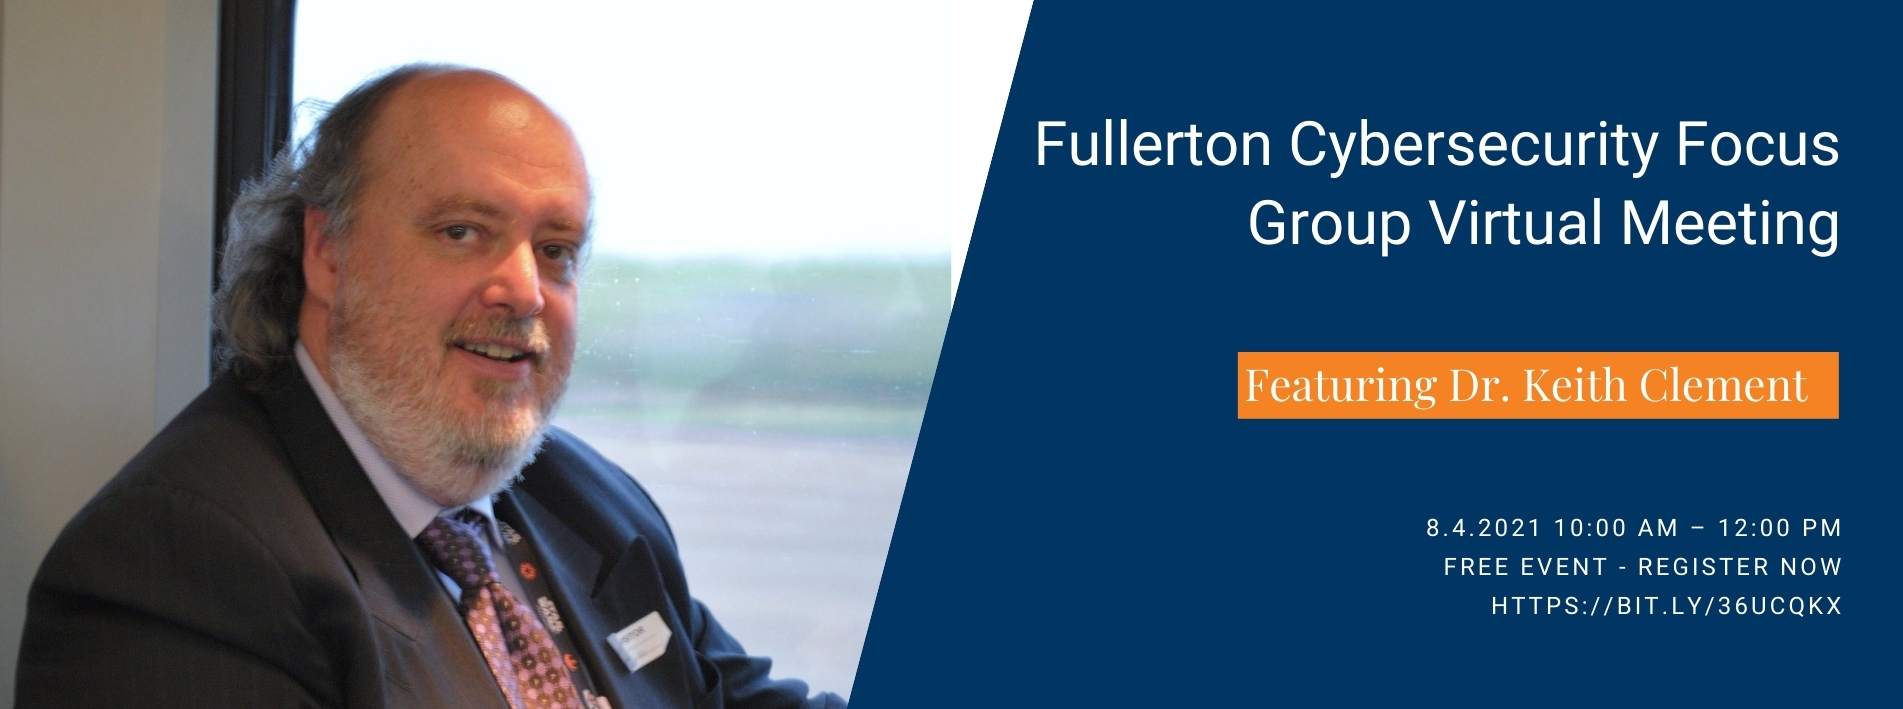 Fullerton Cybersecurity Focus Group Virtual Meeting